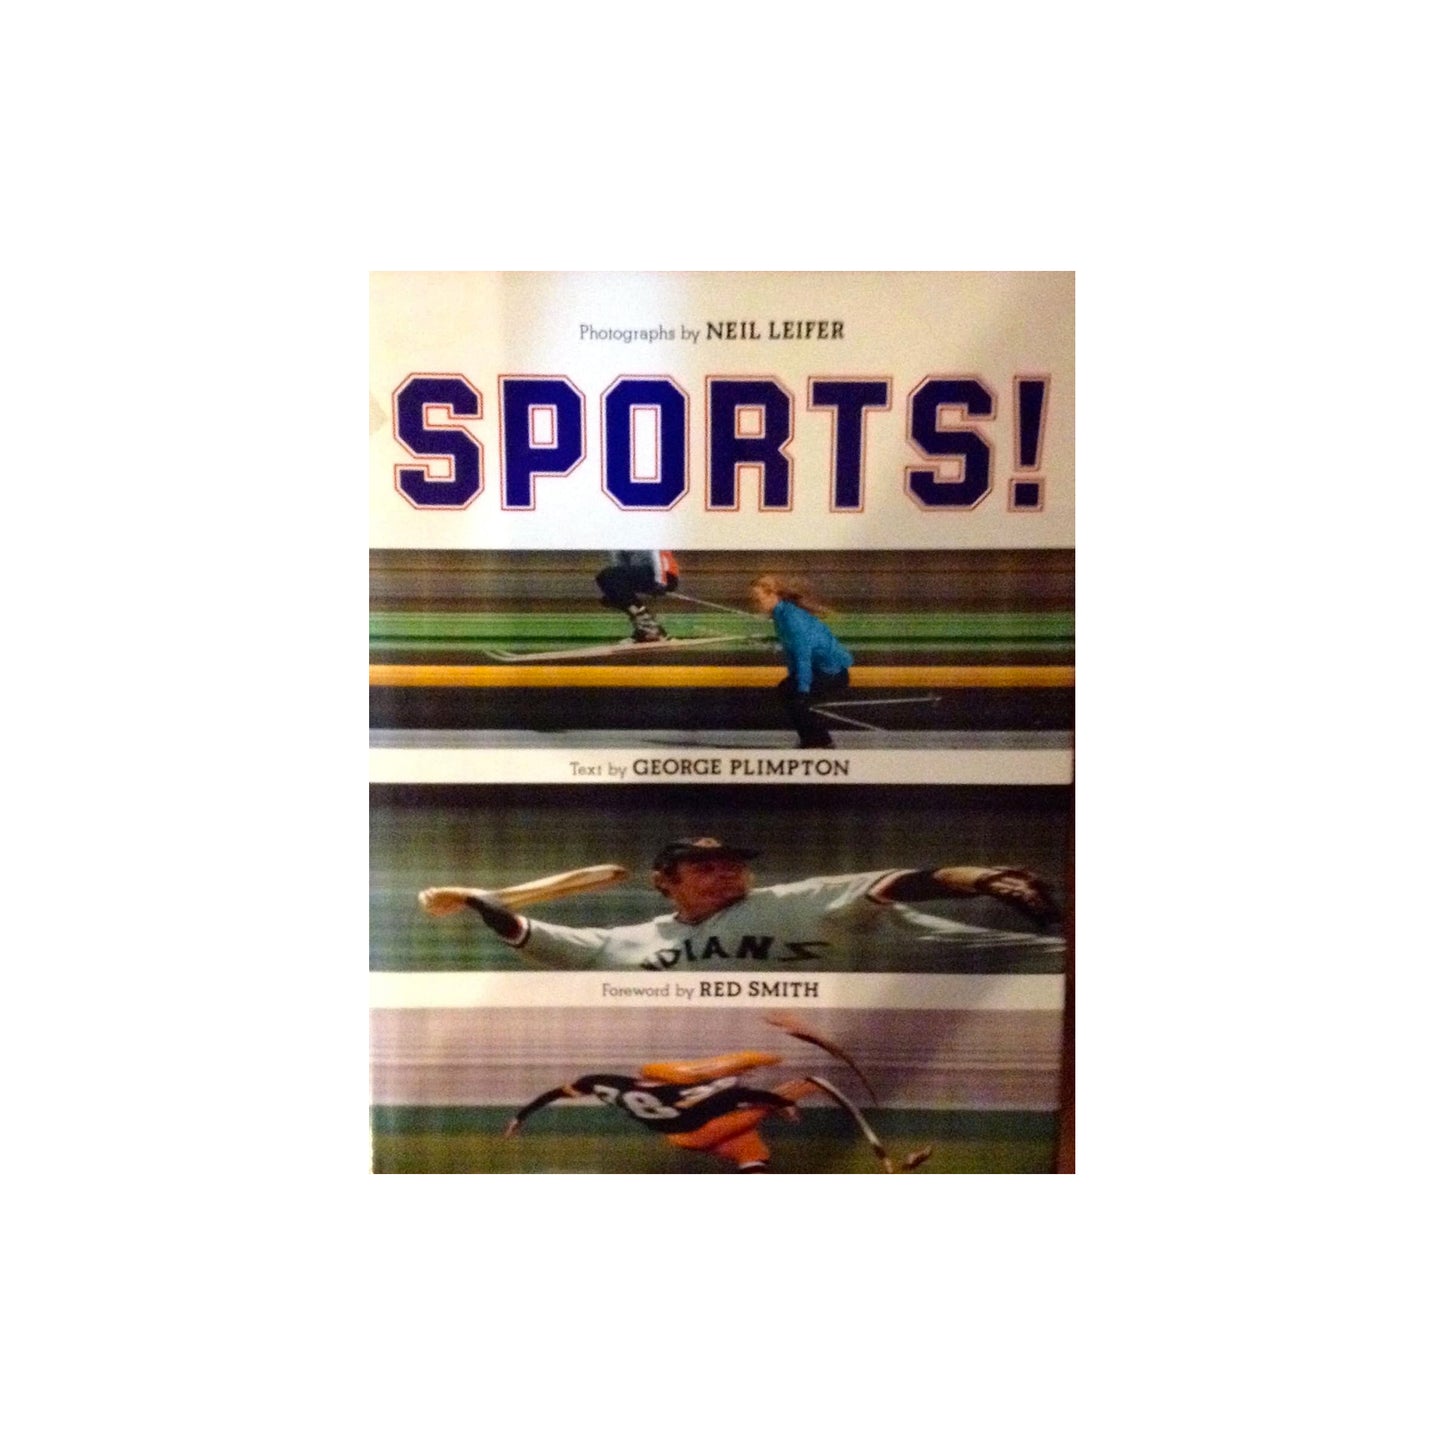 Sports! by George Plimpton